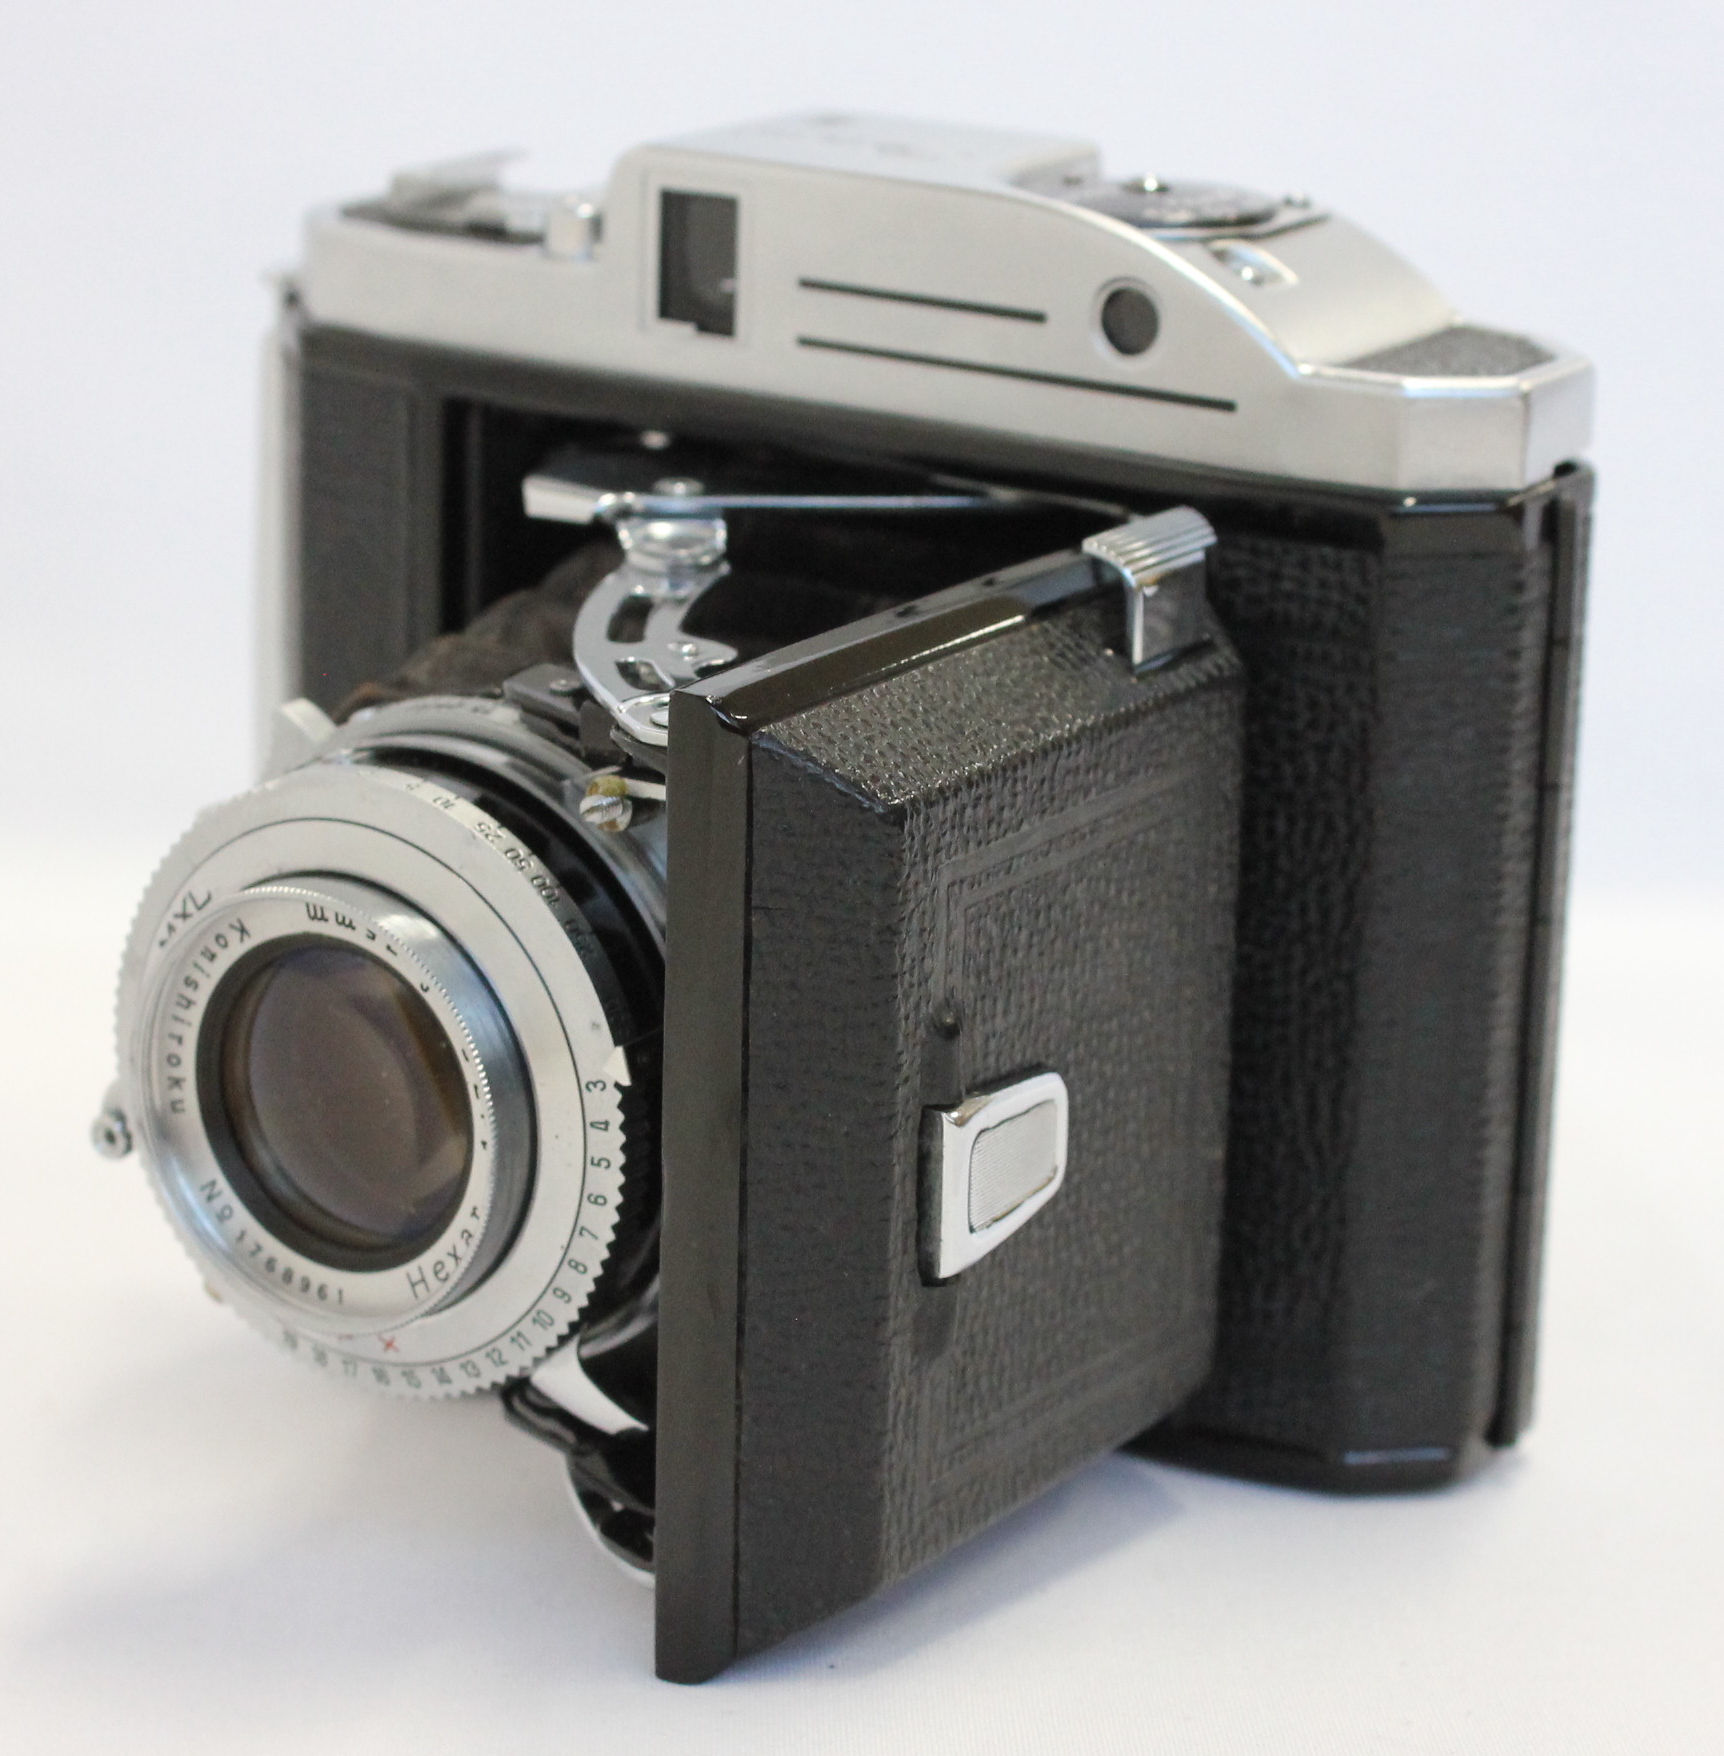 [Near Mint] Konica Konishiroku Pearl III  6x4.5 Camera with Hexar 75mm F/3.5 Lens from Japan